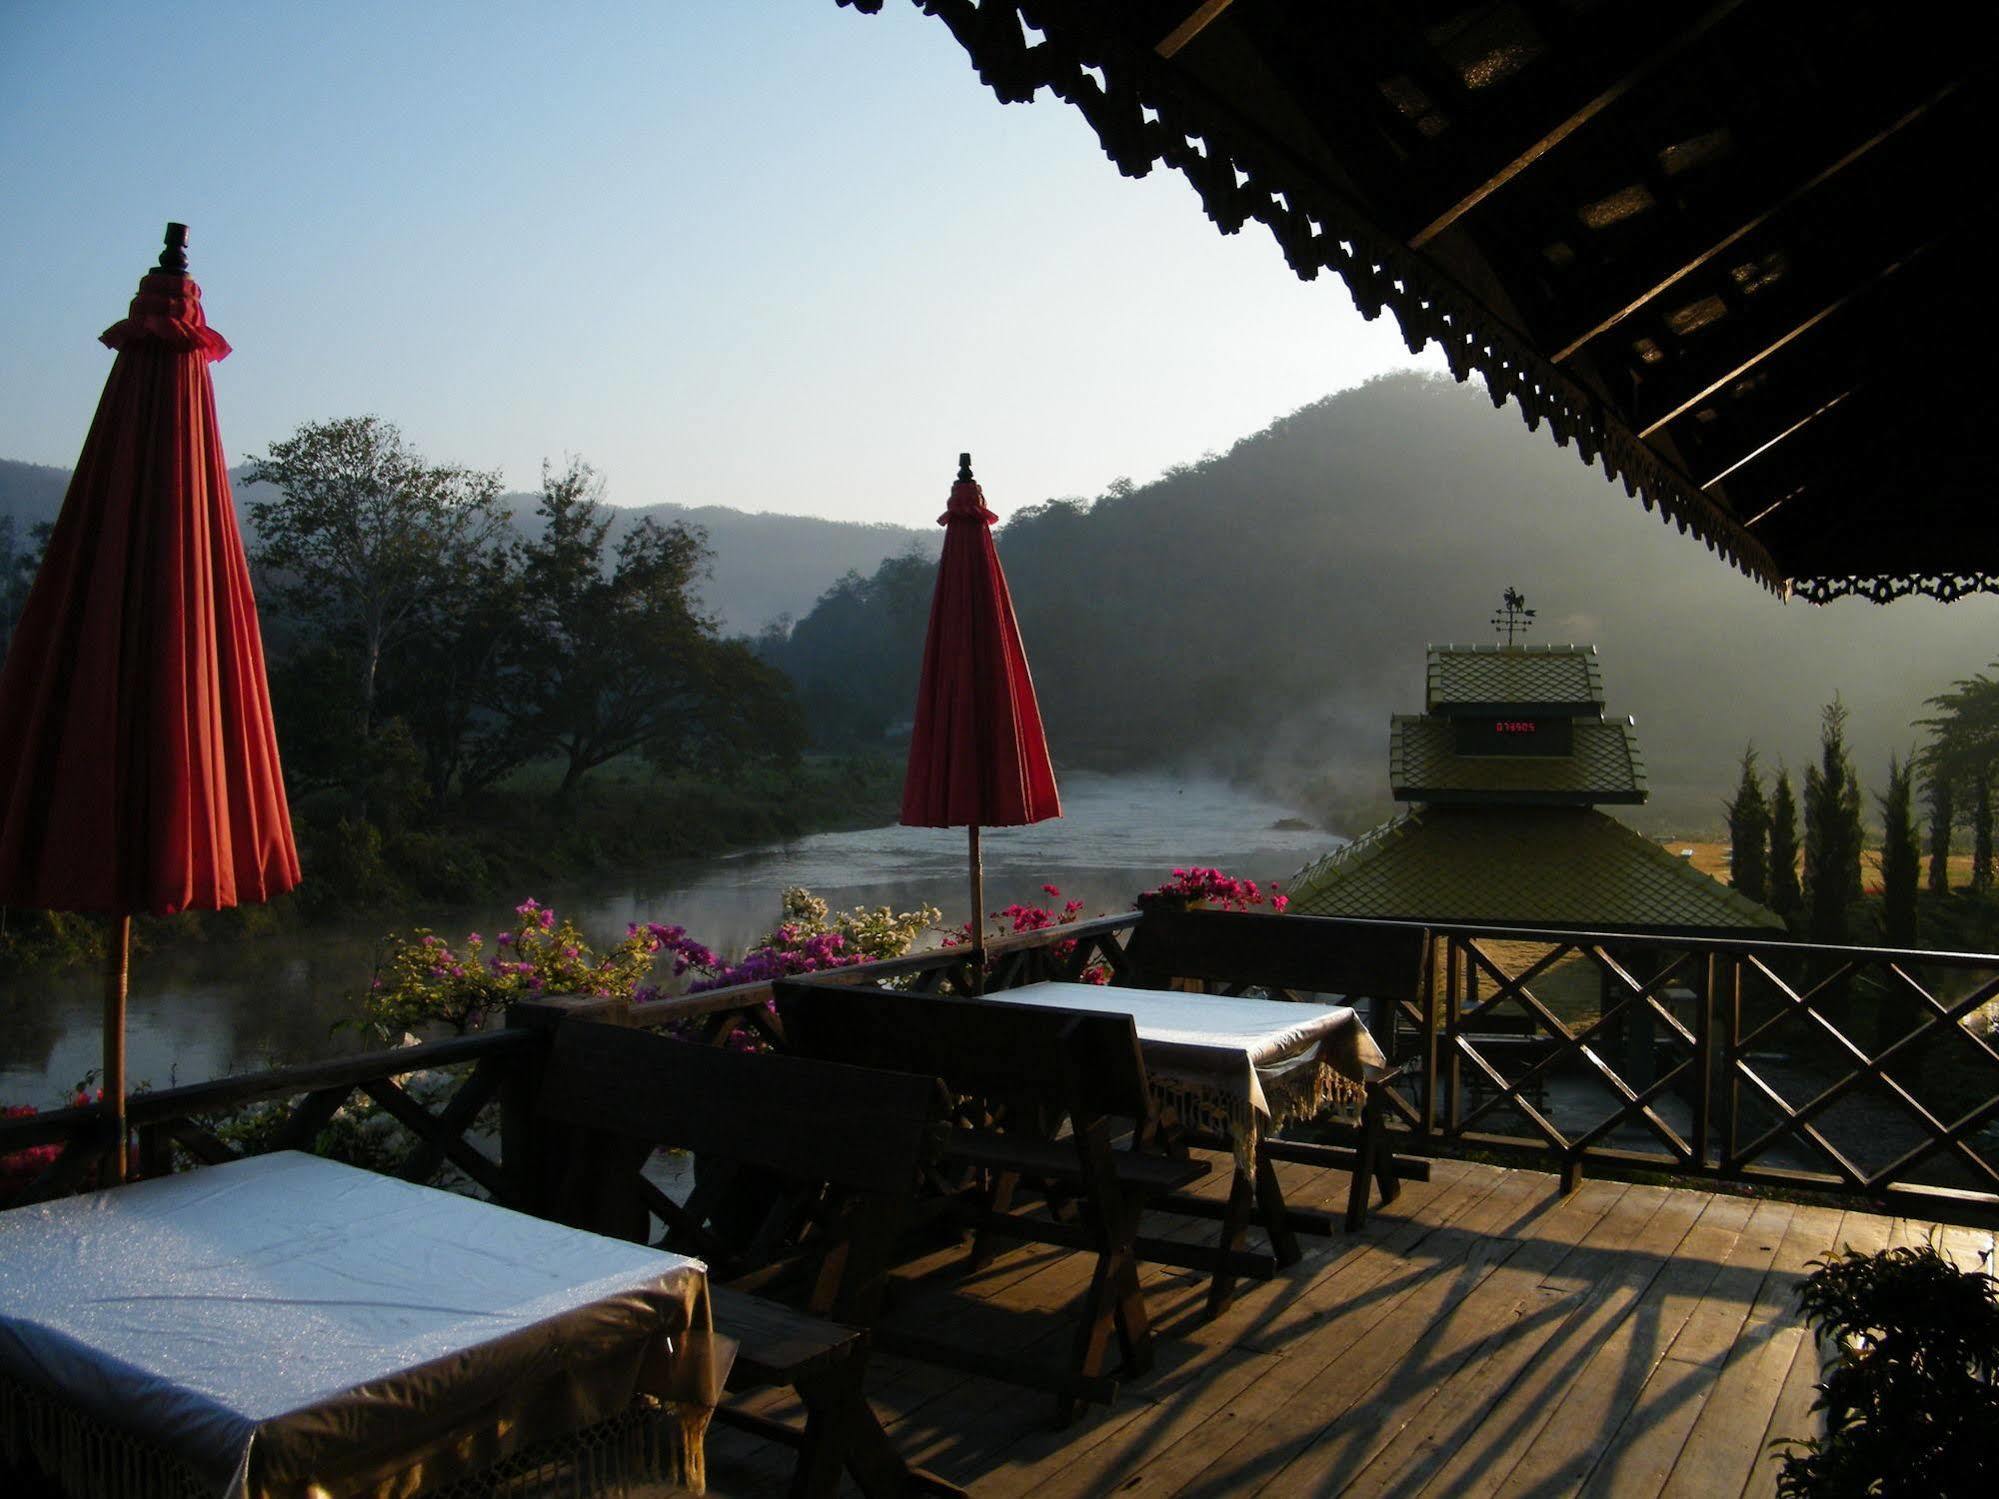 Pai River Mountain Resort Extérieur photo